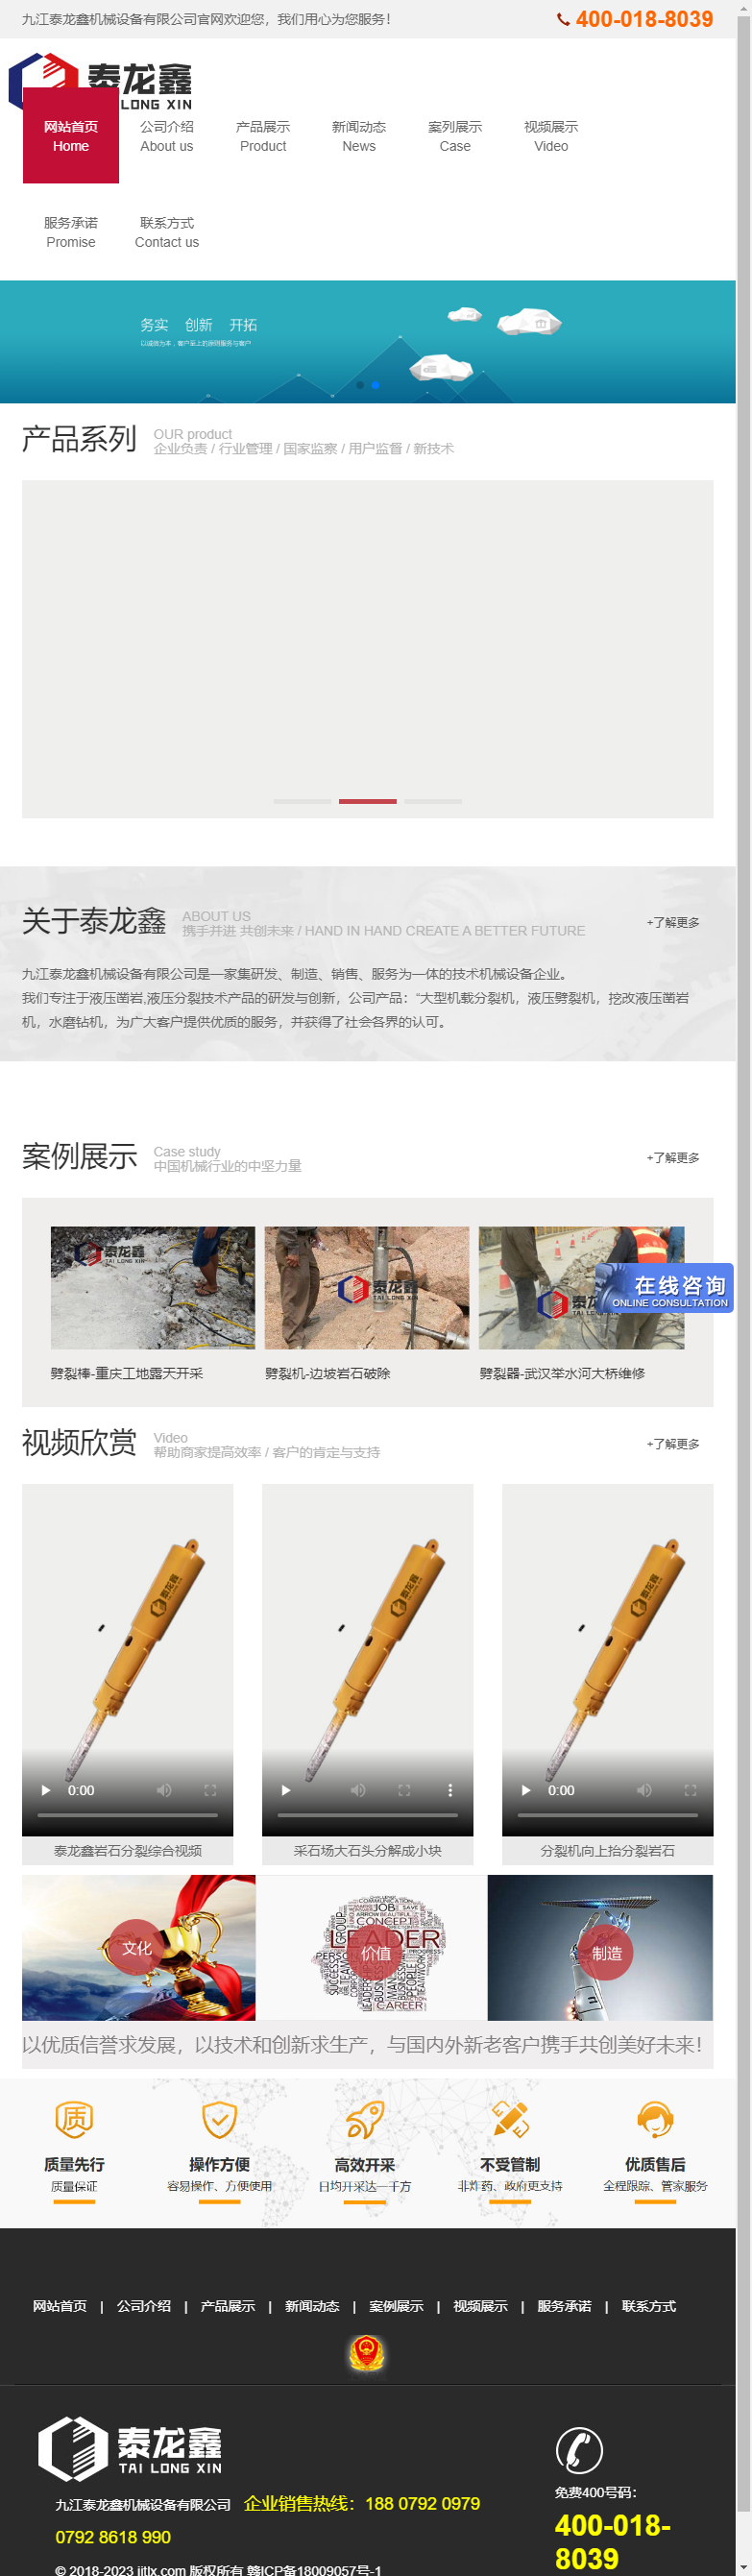 九江泰龙鑫机械设备有限公司网站案例